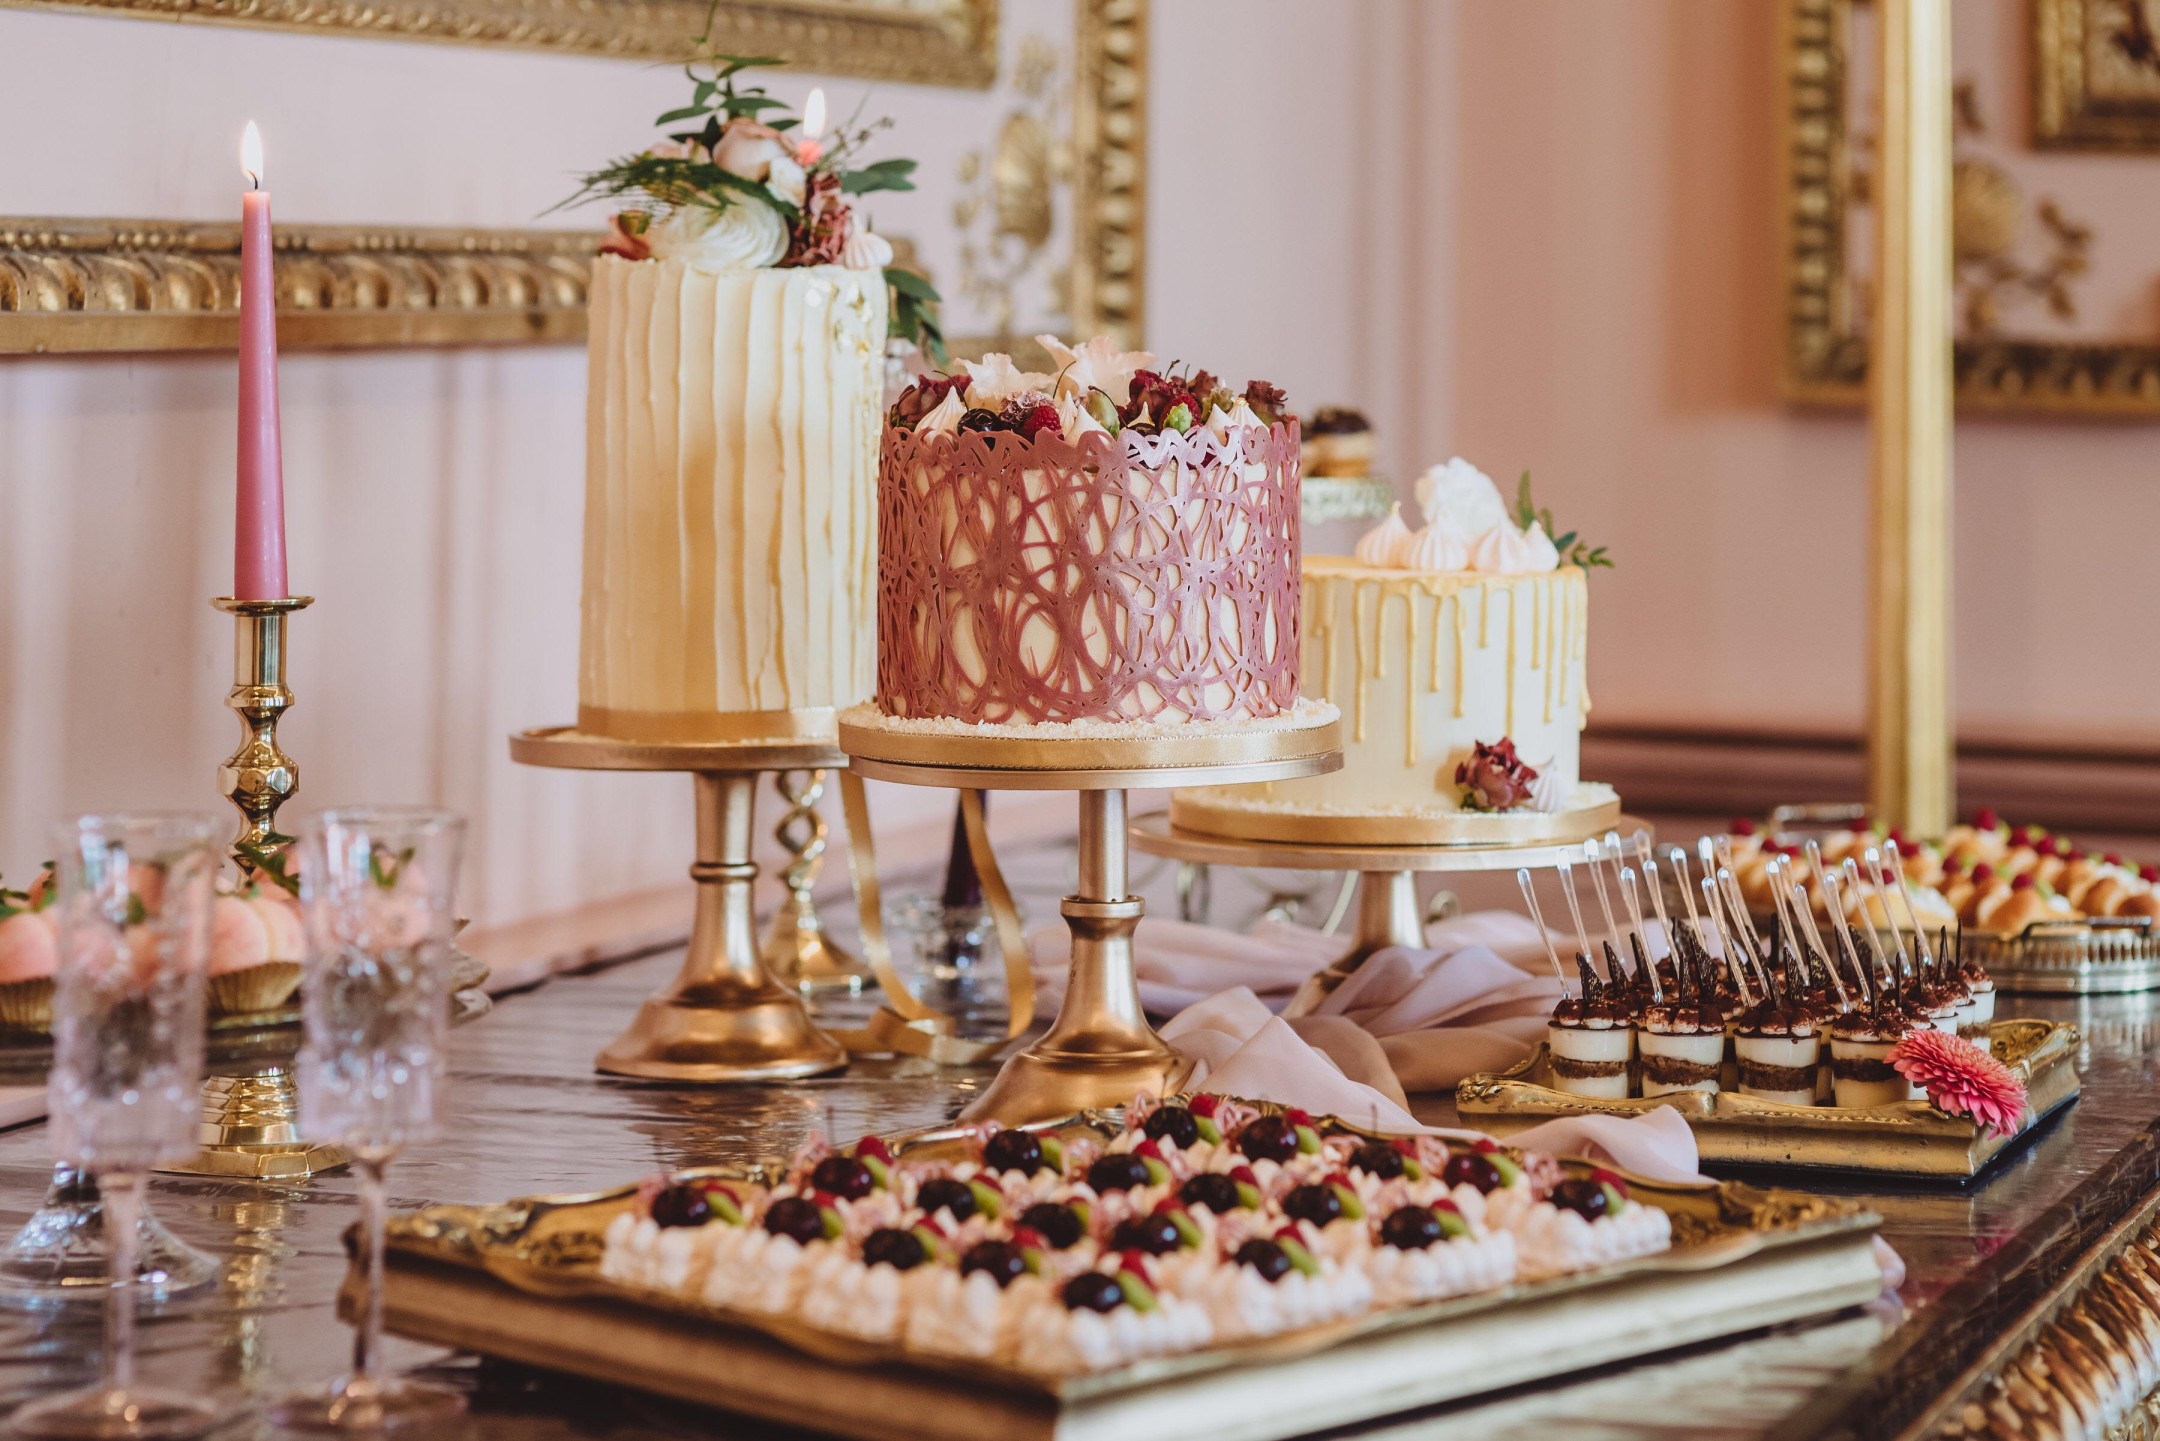 Pasticerria Lorena - Italian wedding cakes - Italian dessert table - alternative wedding cakes - unique wedding cakes 2